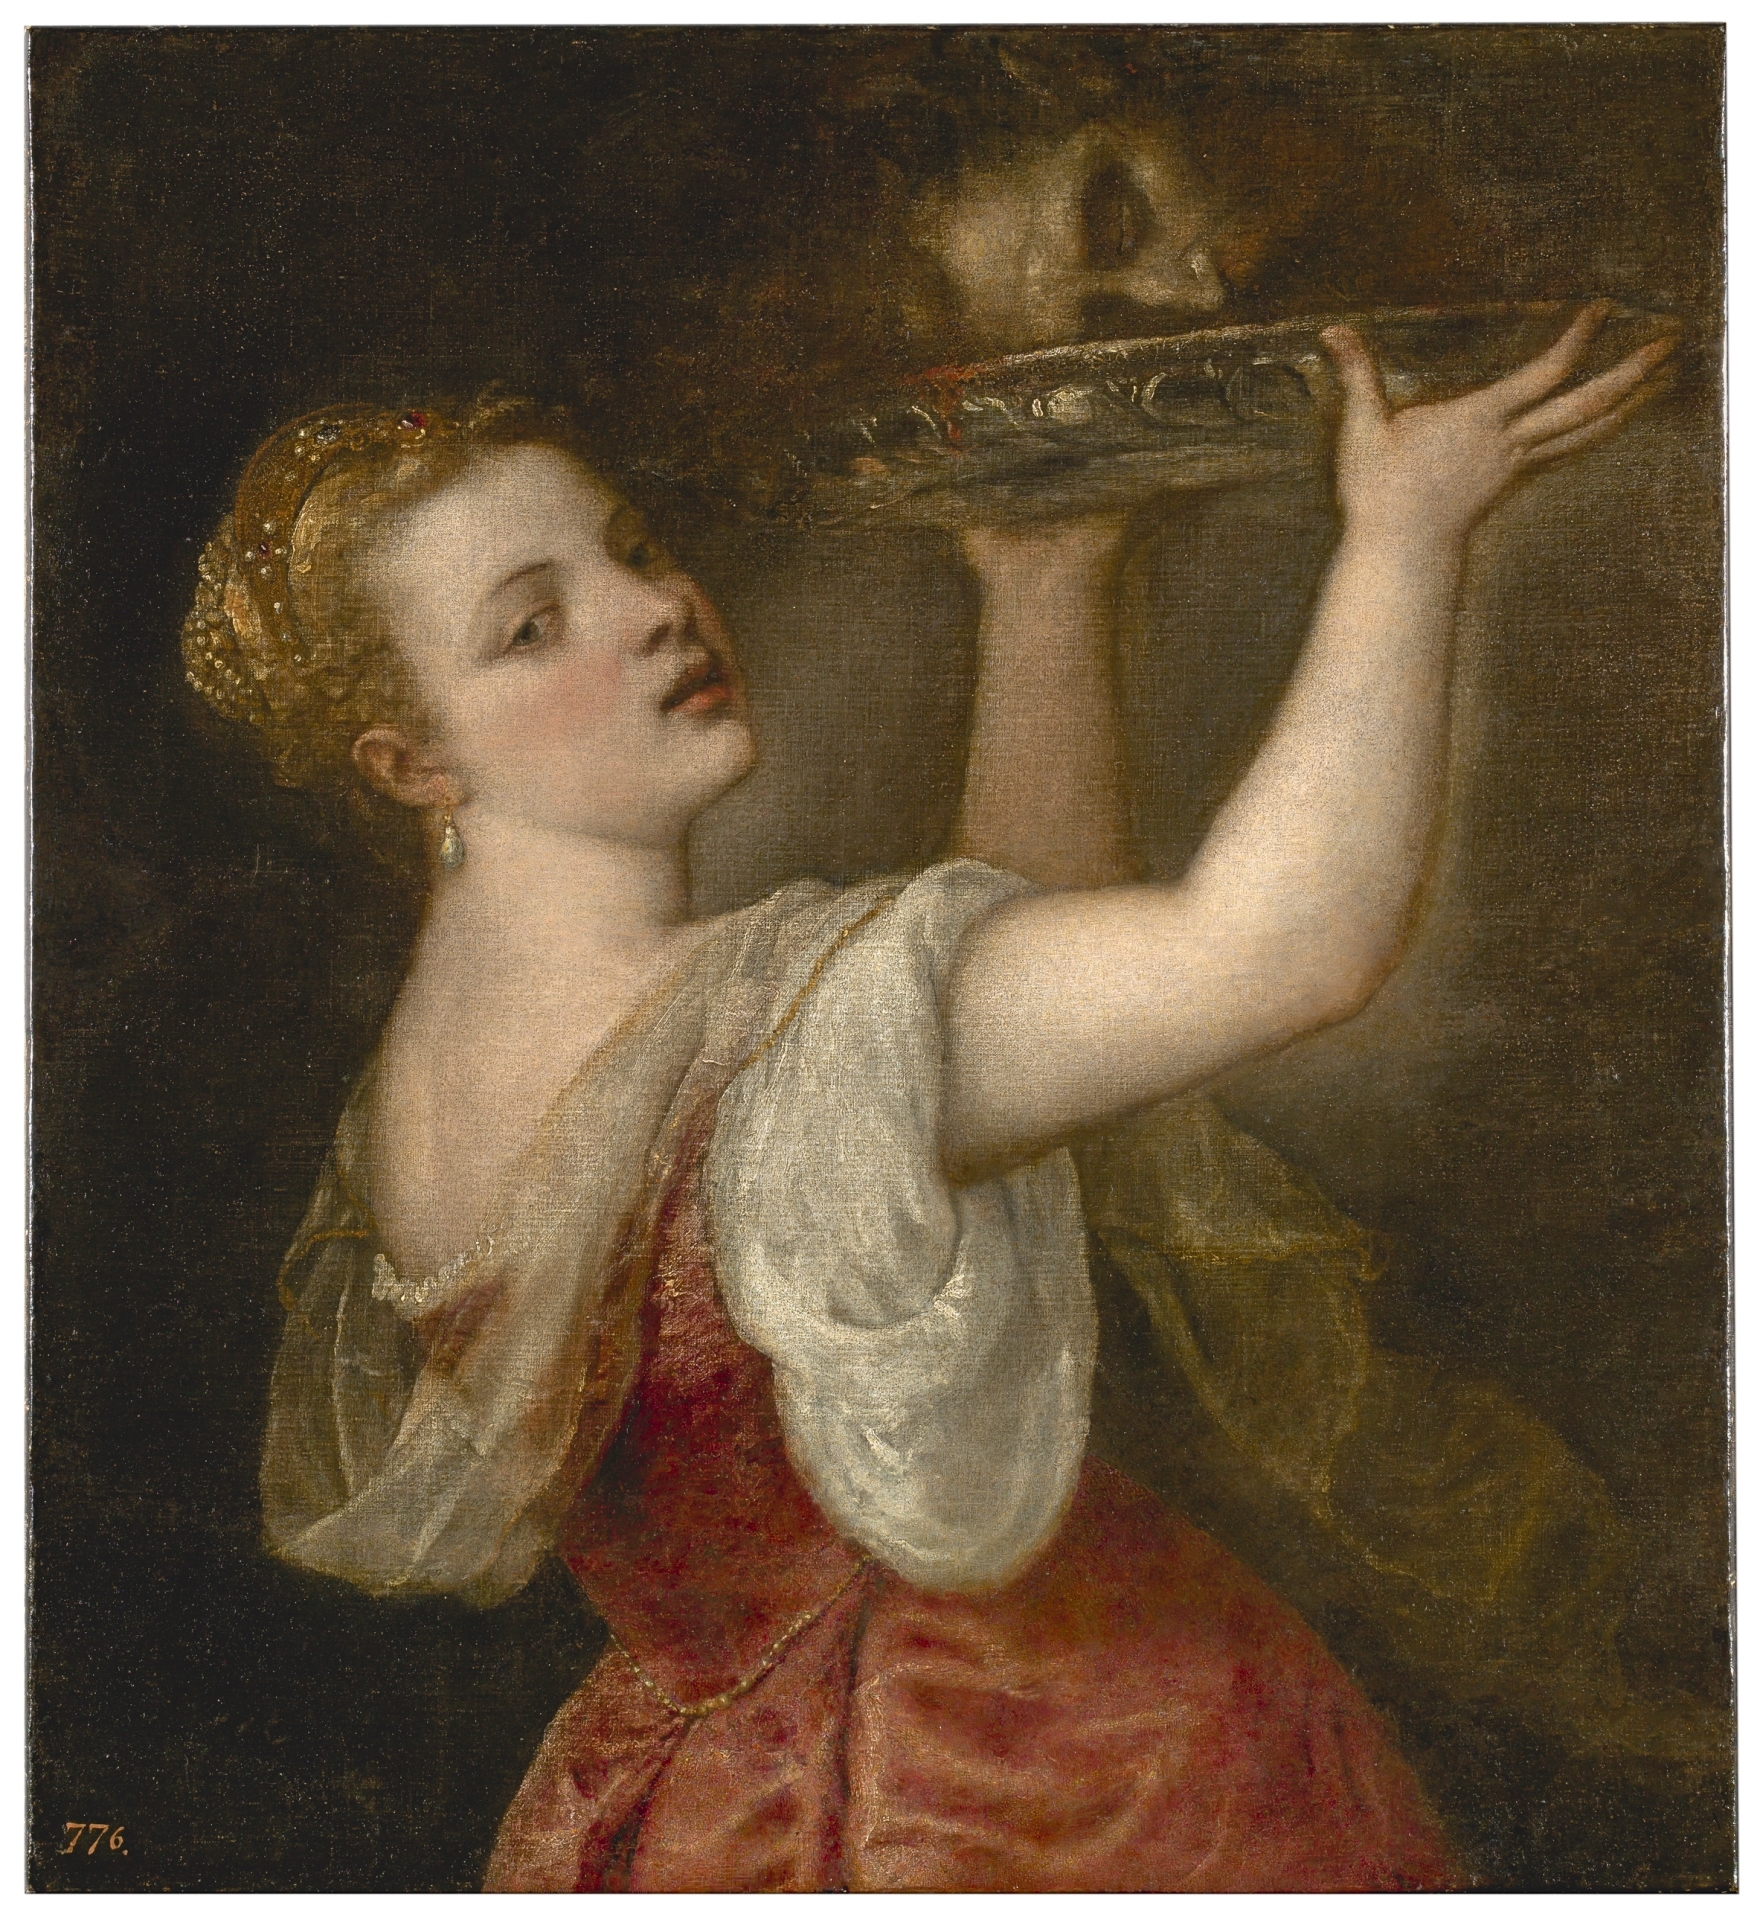 Salome - The Collection - Museo Nacional del Prado